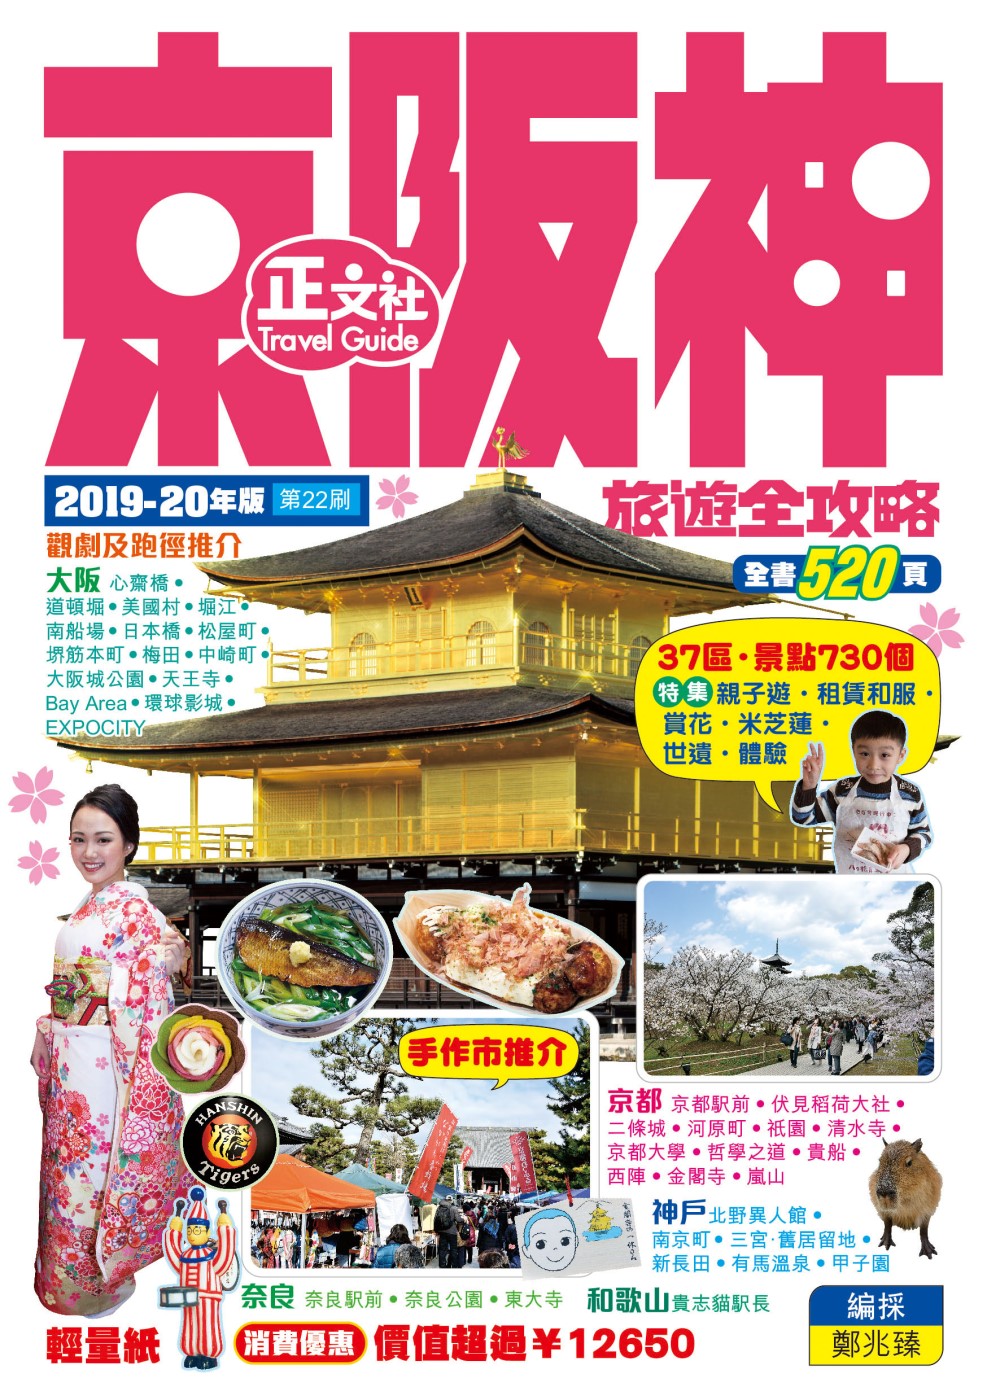 京阪神旅遊全攻略 2019-20年版